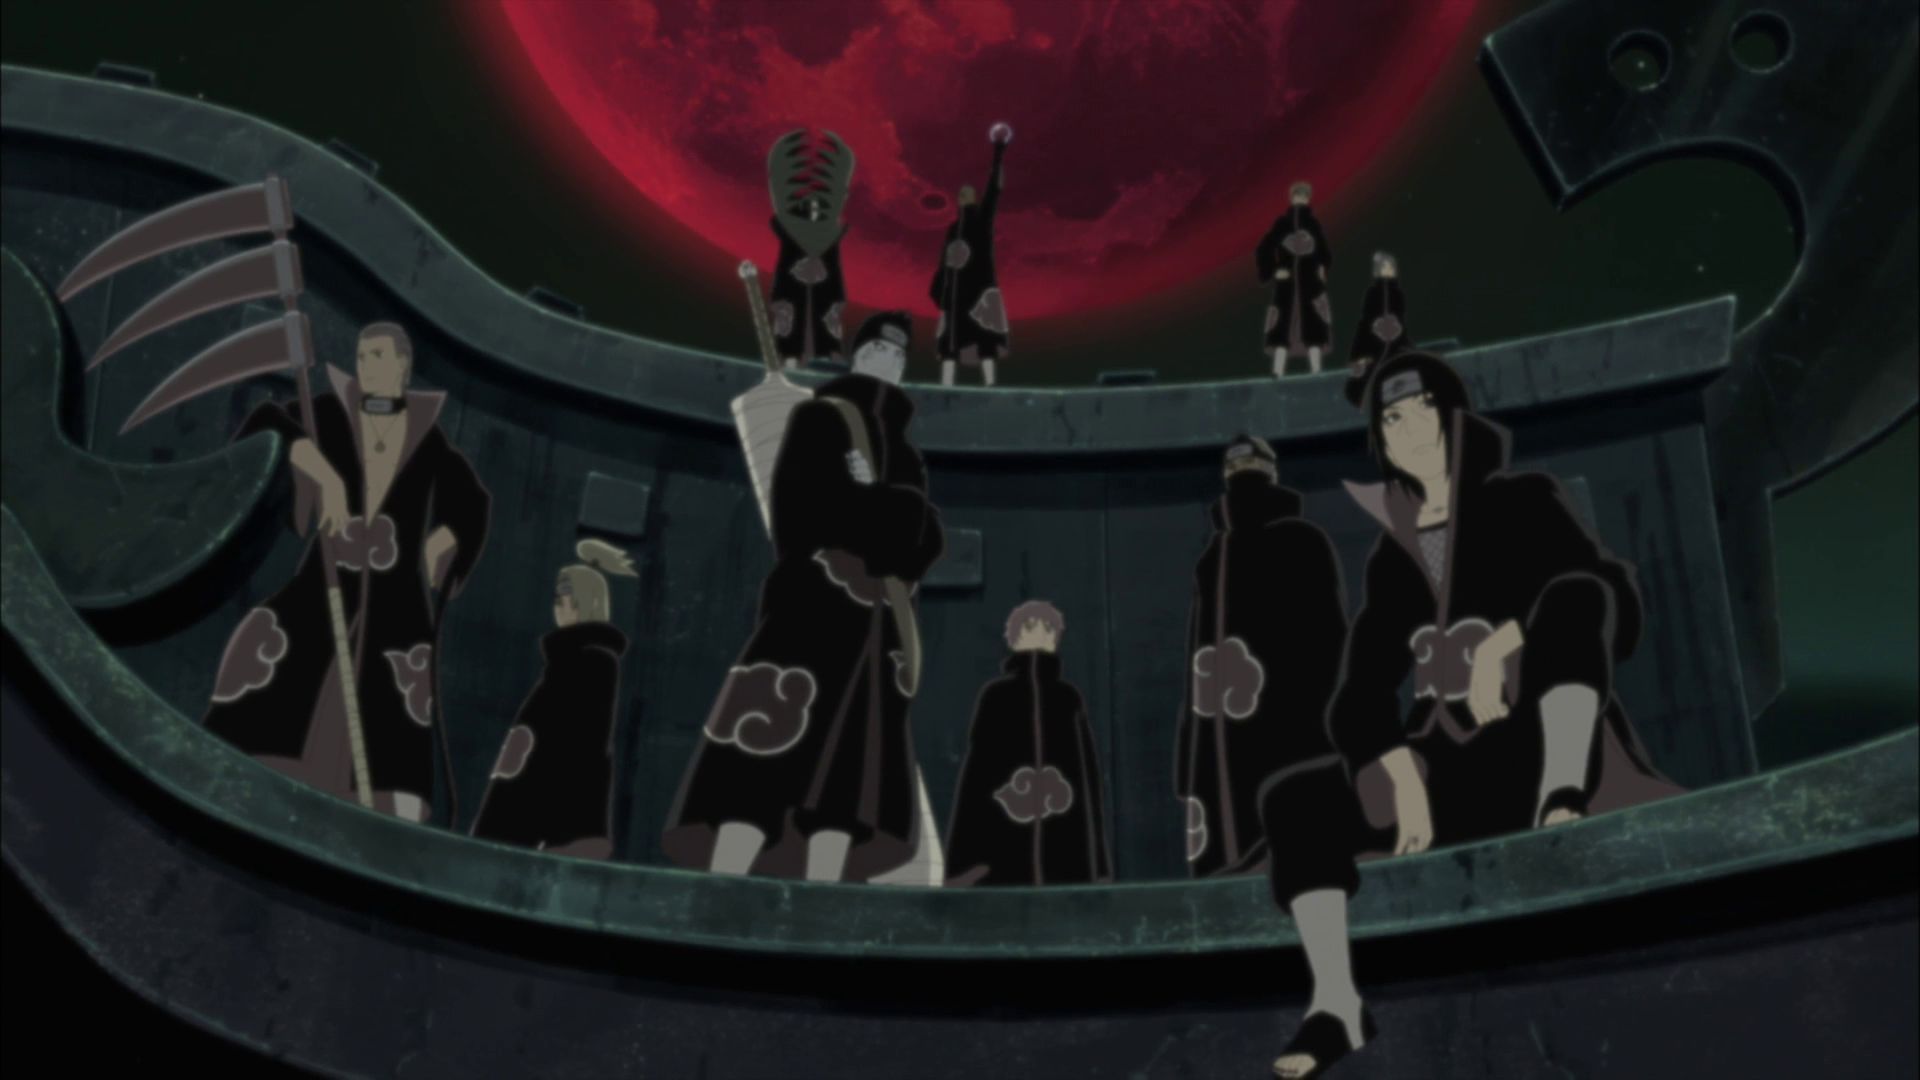 ¿A qué miembro de los Akatsuki jamás le interesó atrapar a Naruto